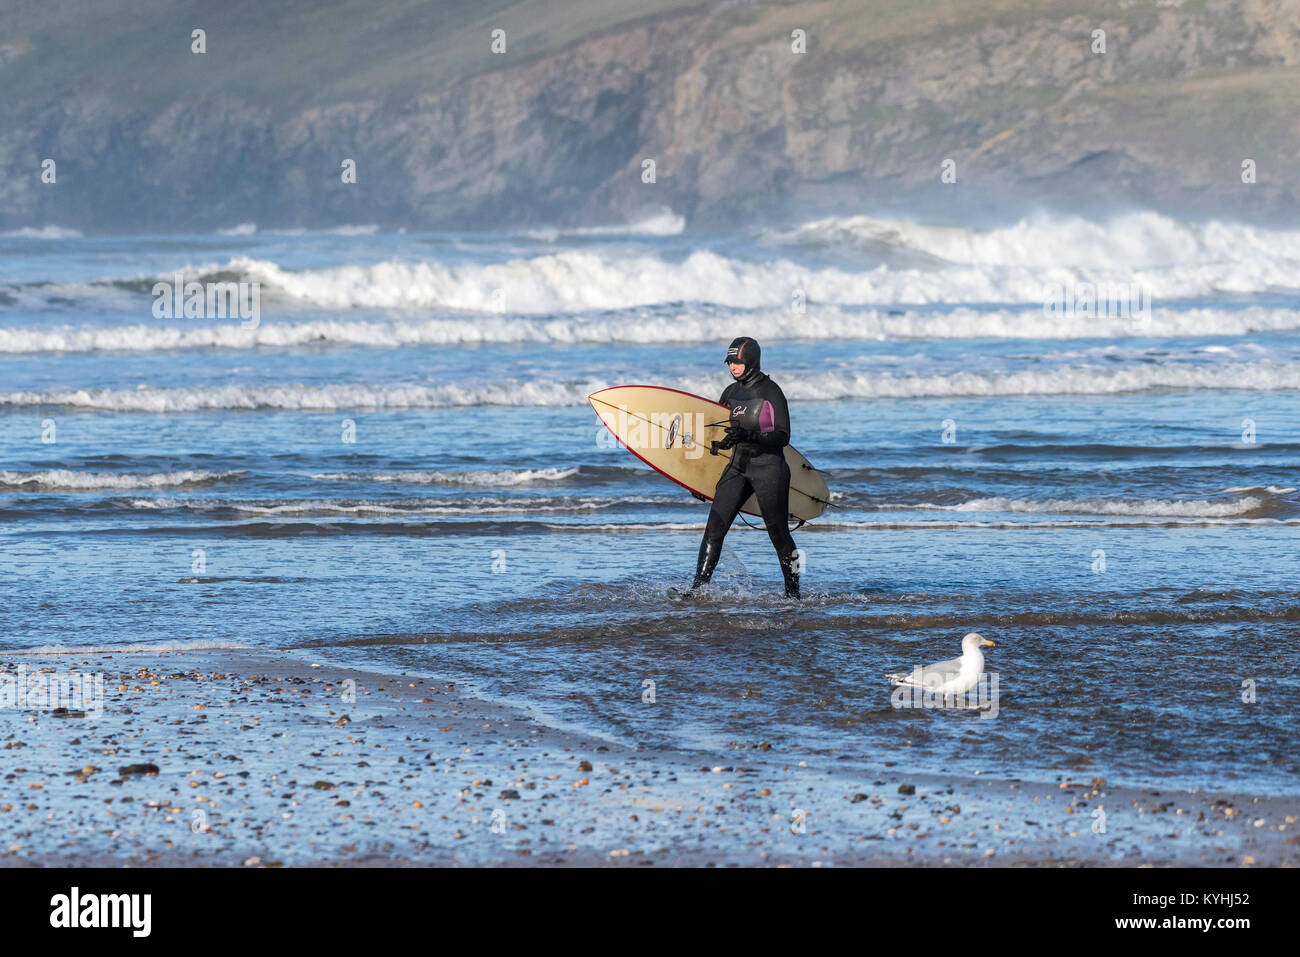 Polzeath surfer - un surfeur sortant de la mer sur la plage de Polzeath sur la côte nord des Cornouailles. Banque D'Images